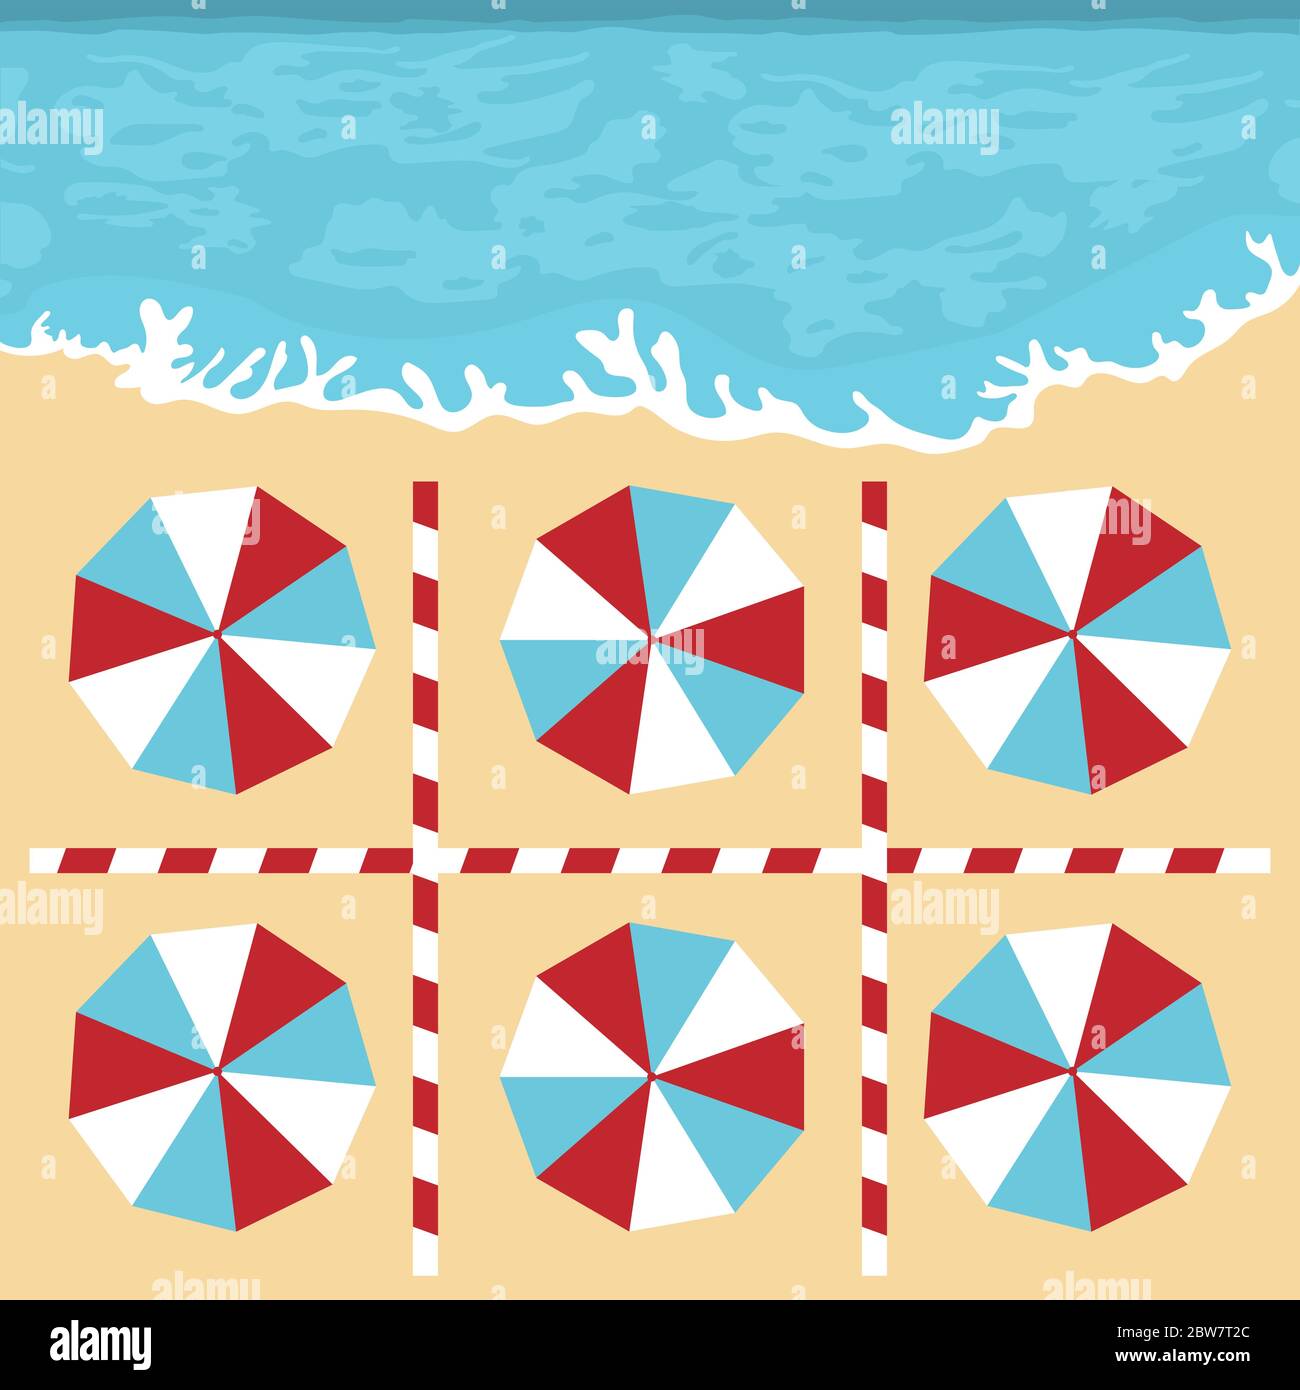 Illustrazione vettoriale che apre le spiagge dopo la quarantena COVID-19, pandemia di coronavirus. Ombrelloni, luoghi per rilassarsi a distanza Social Distancing. SUMM Illustrazione Vettoriale